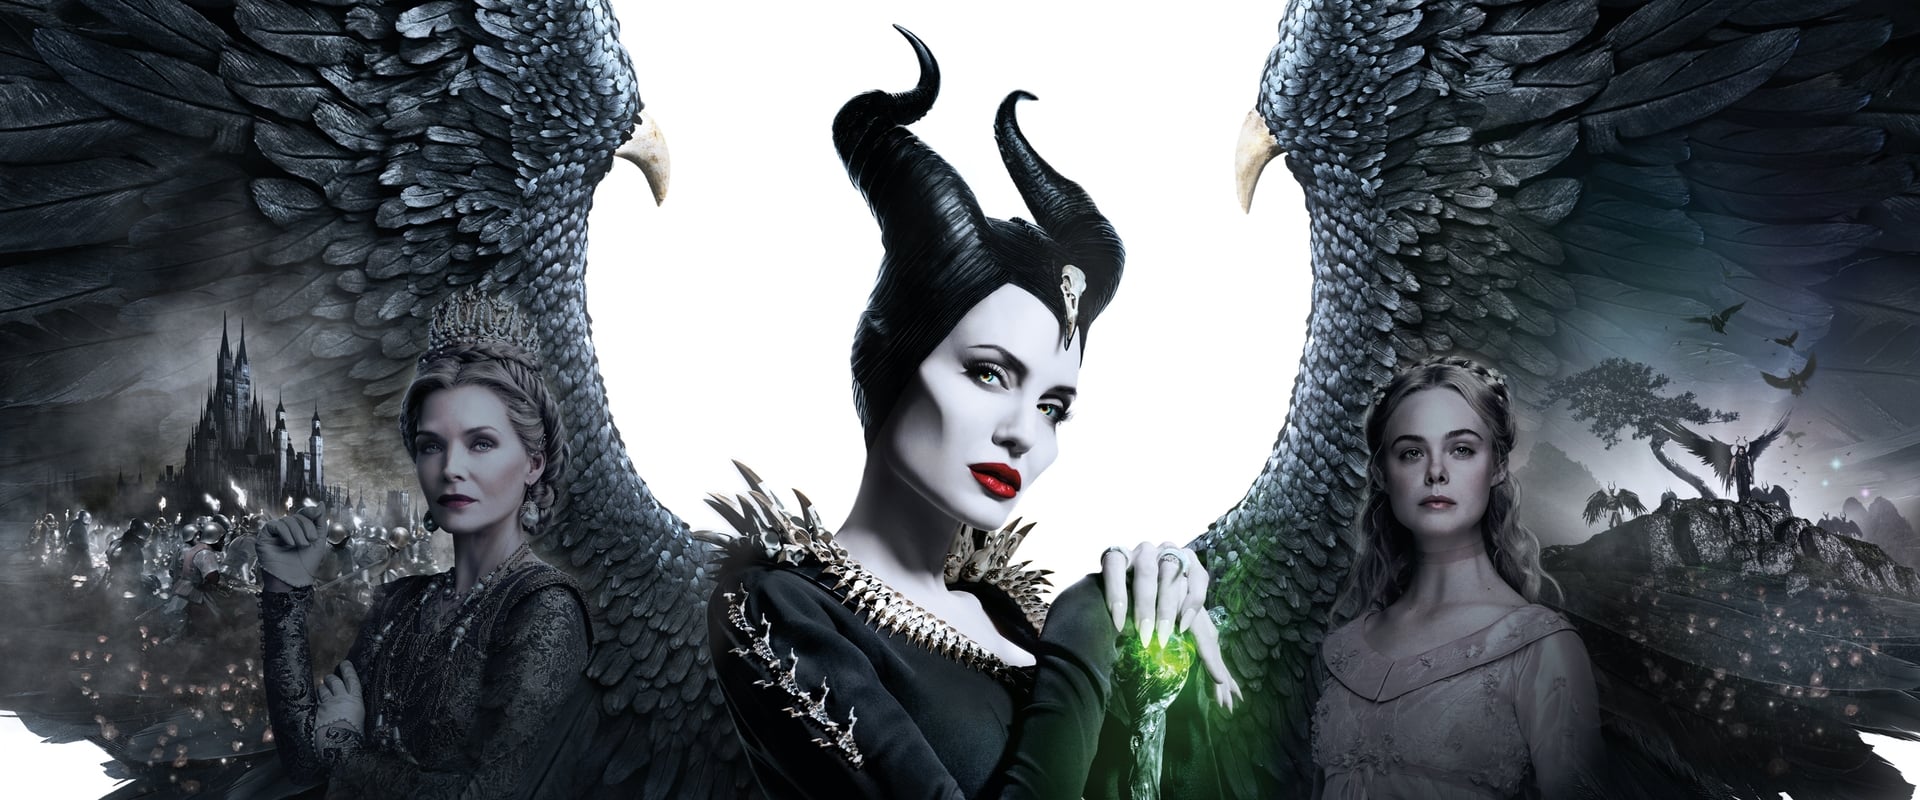 Maleficent 2: Ondskans härskarinna